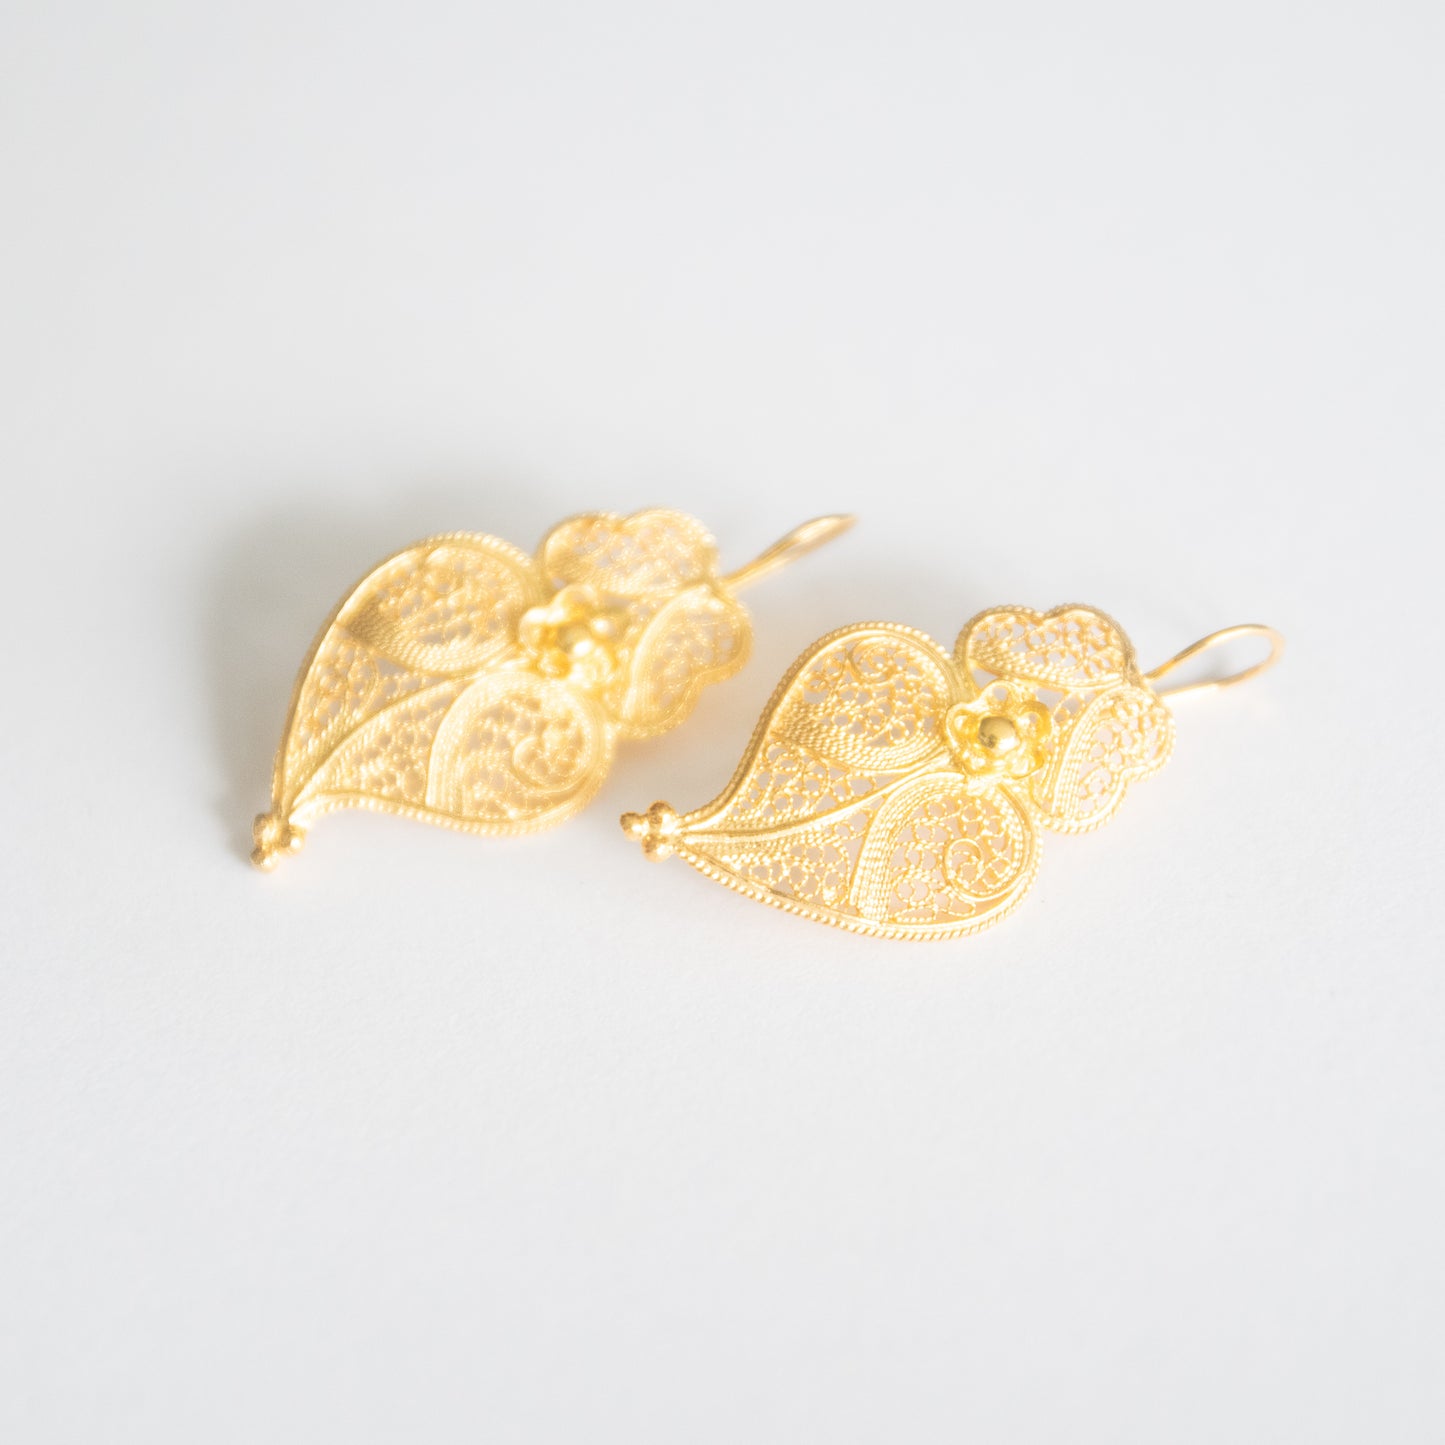 Boucles d'oreilles "Coeur de Viana" en argent plaqué or